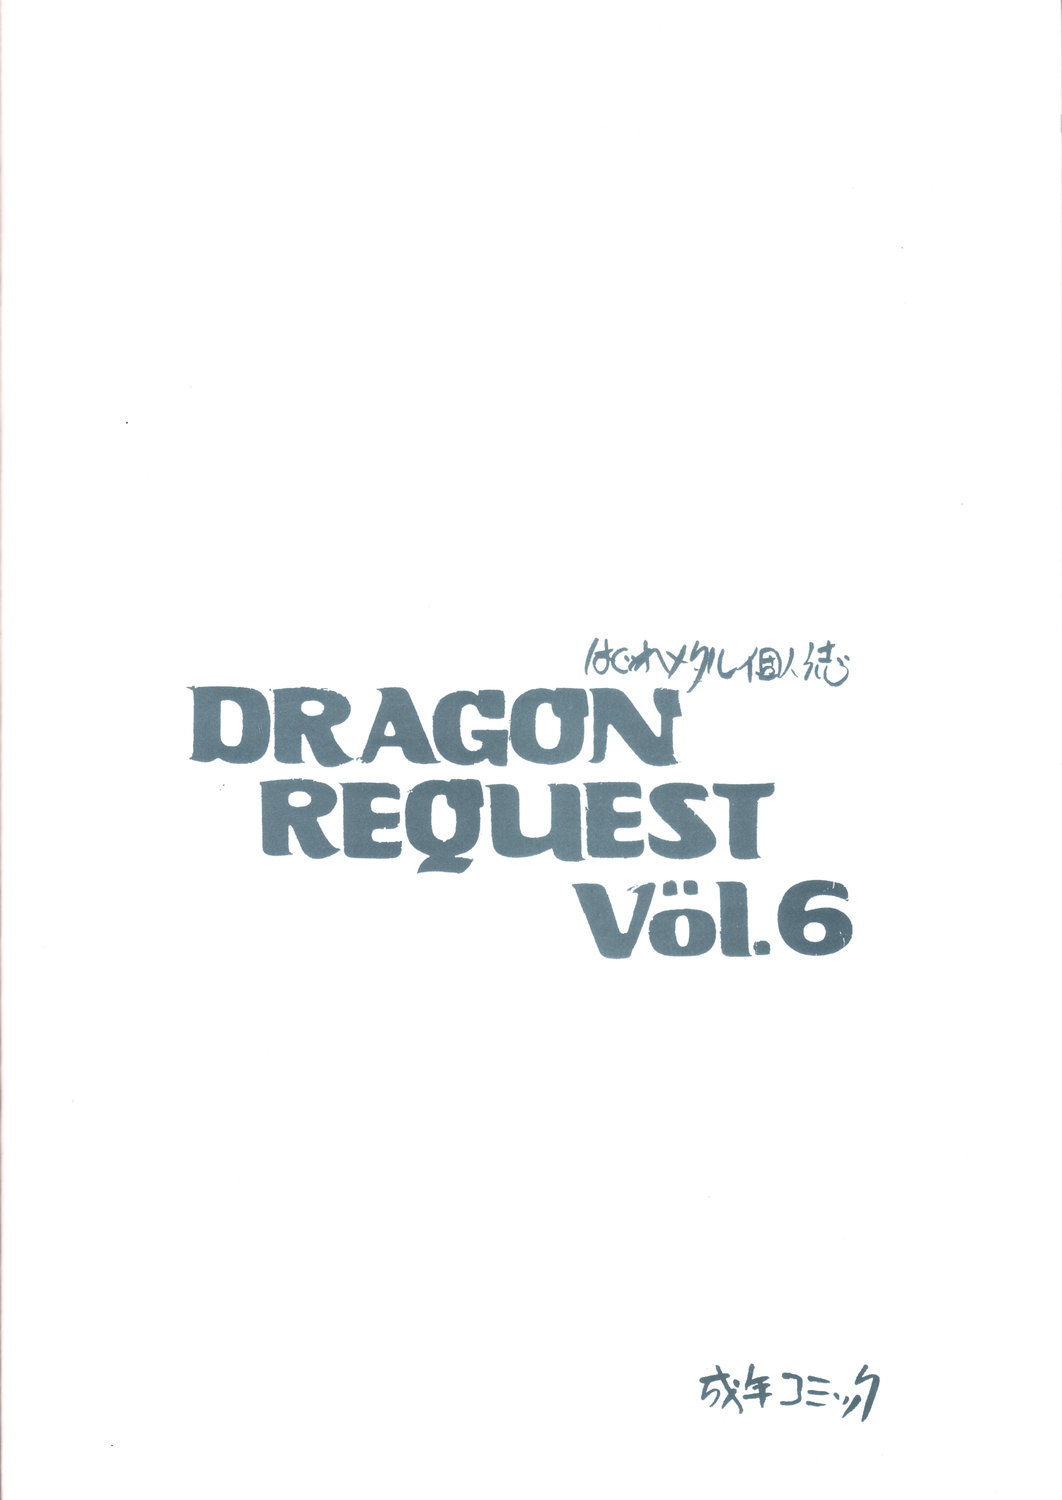 DRAGON REQUEST Vol.6 (Dragon Quest) 